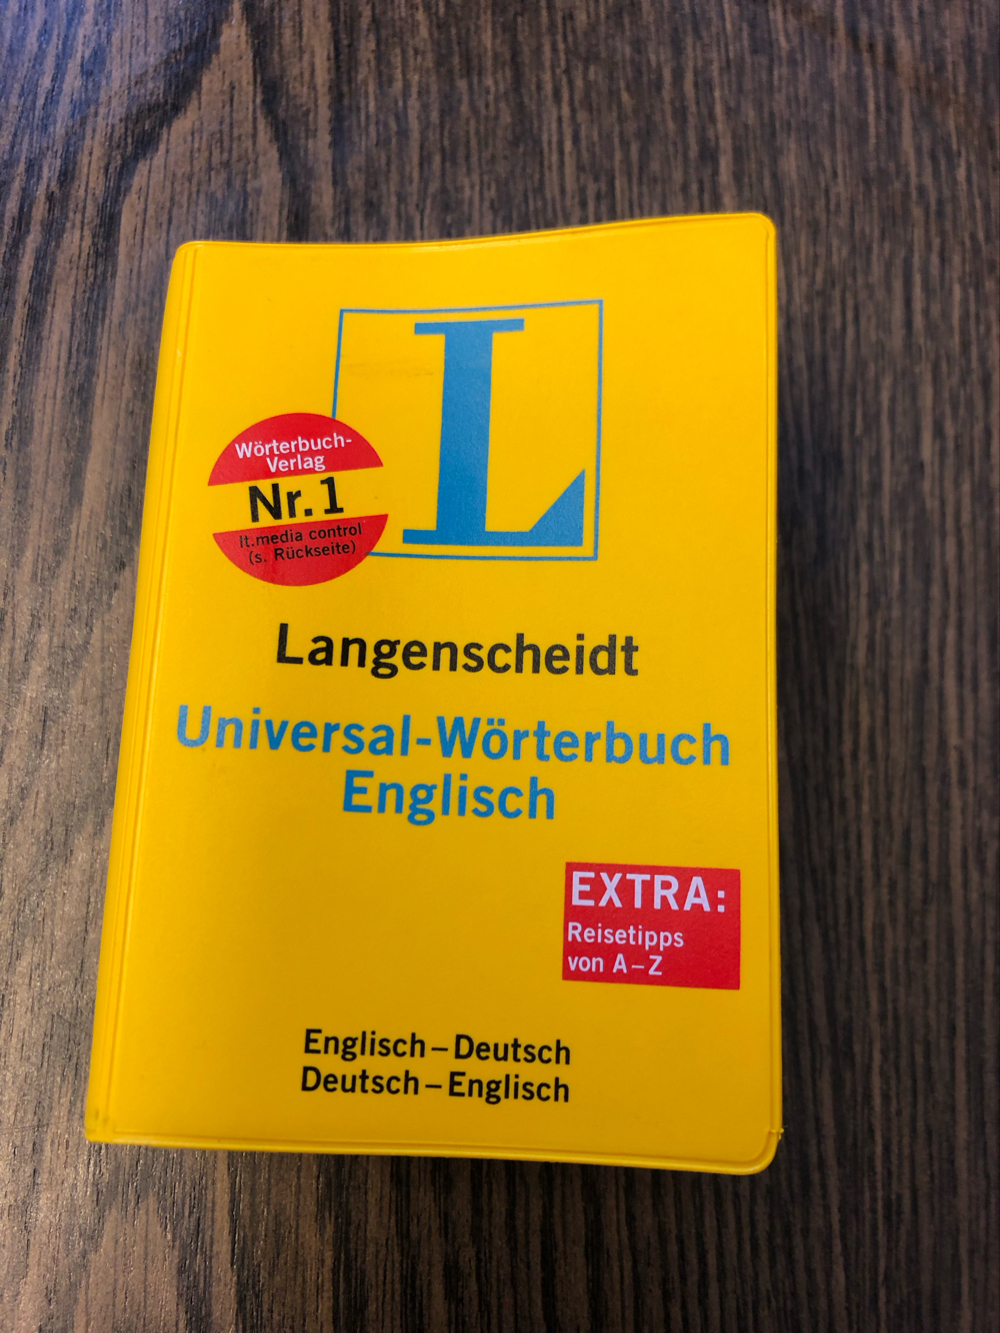 Universal-Wörterbuch Englisch